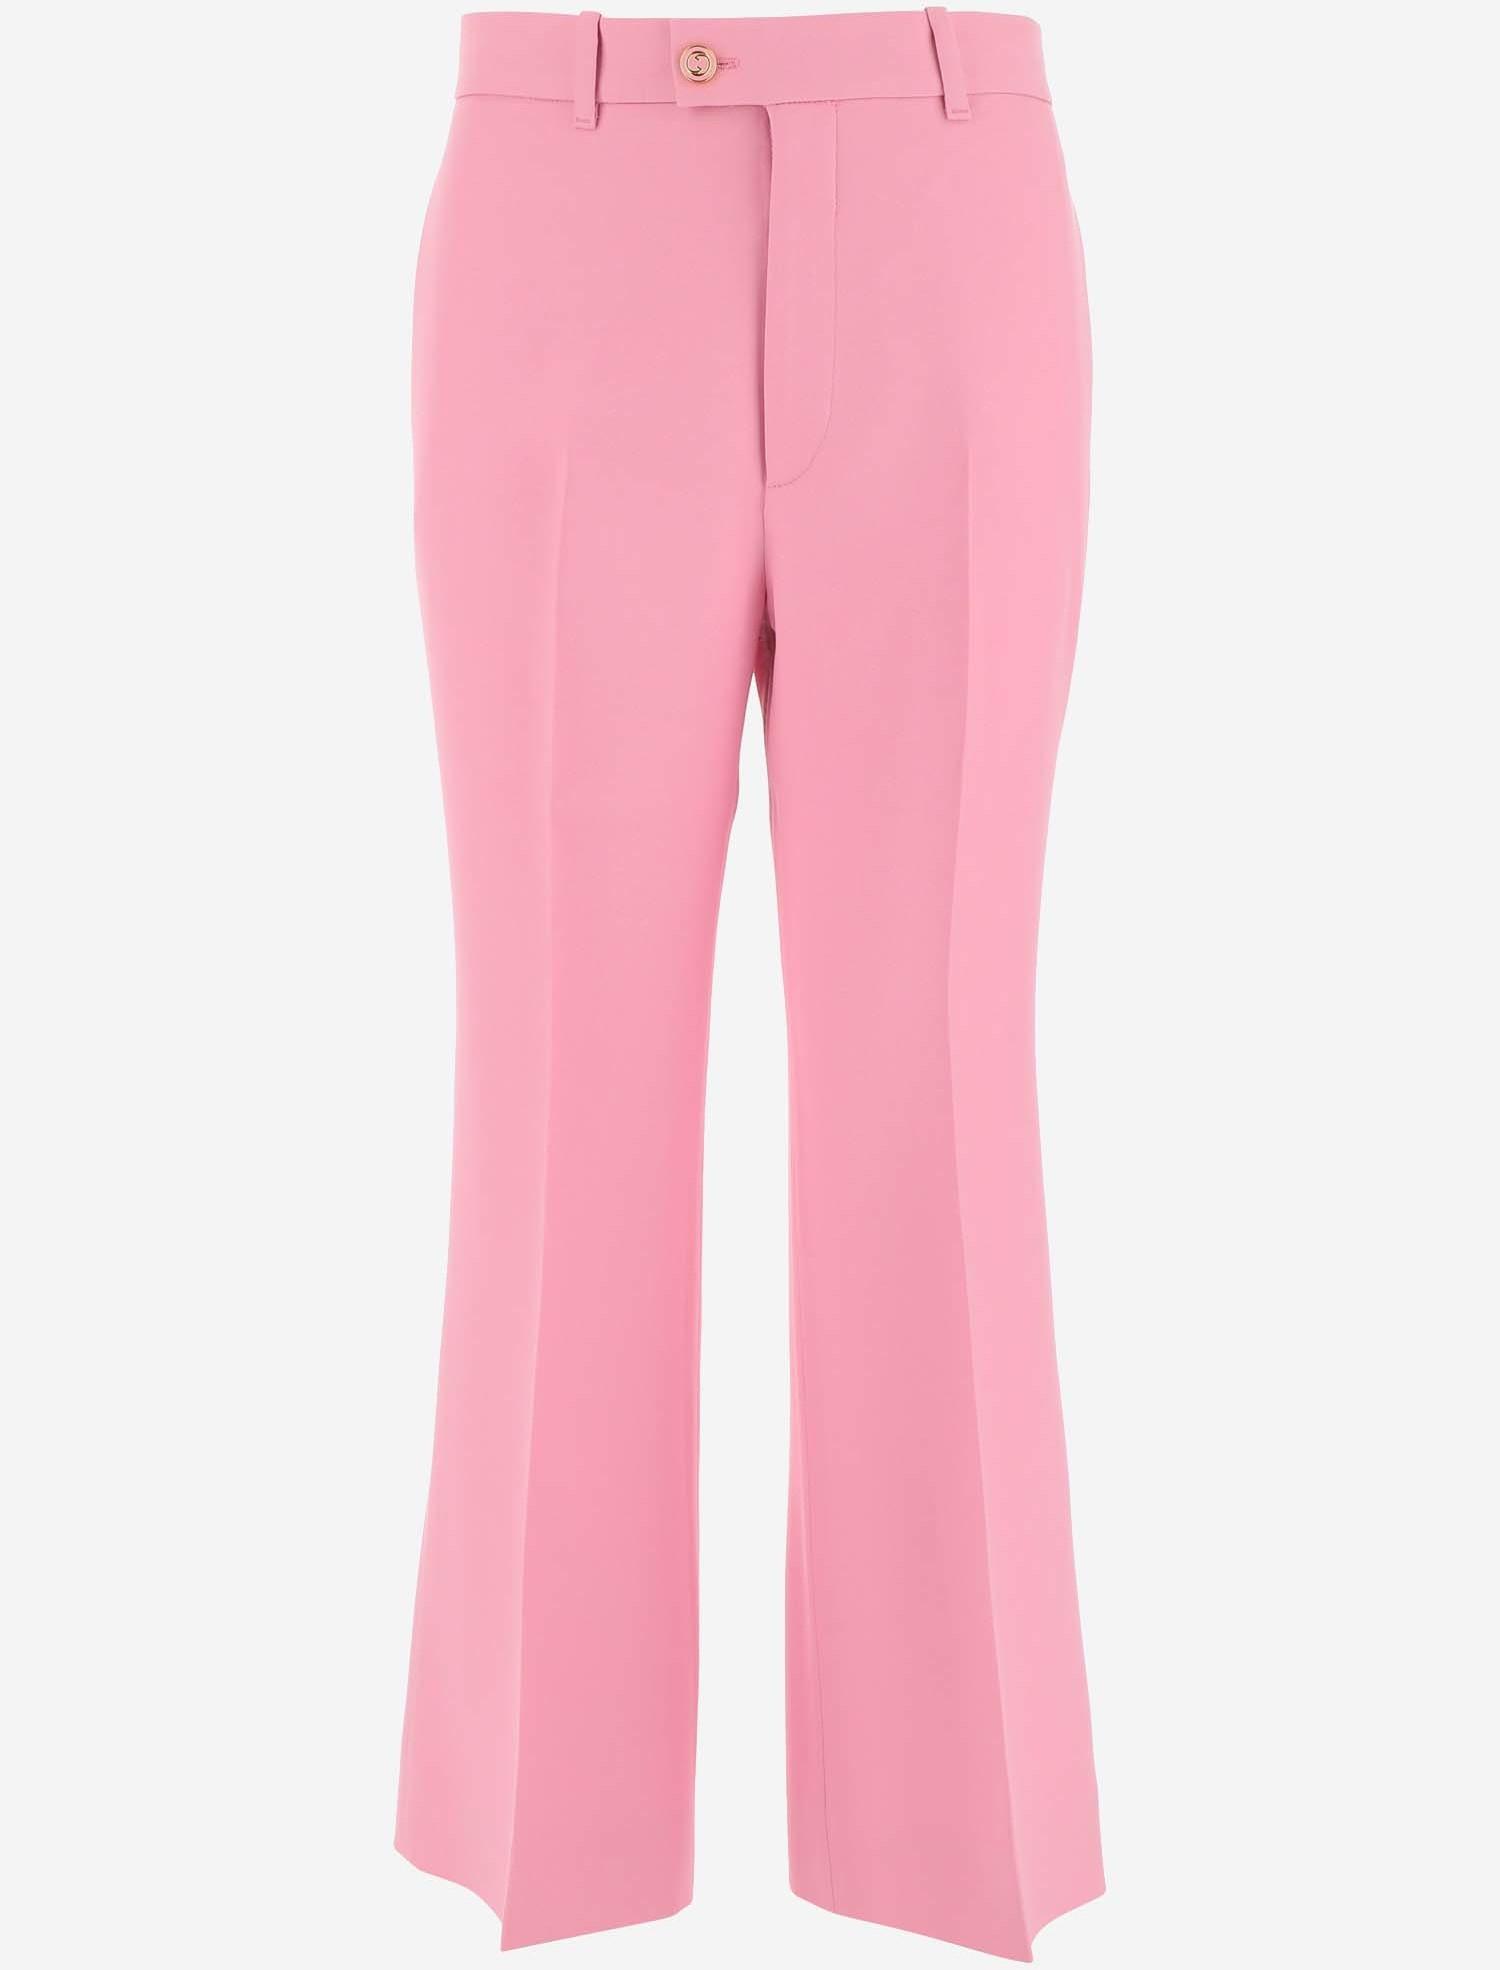 Gucci Gucci Girls Pink Cotton Pants - Stylemyle